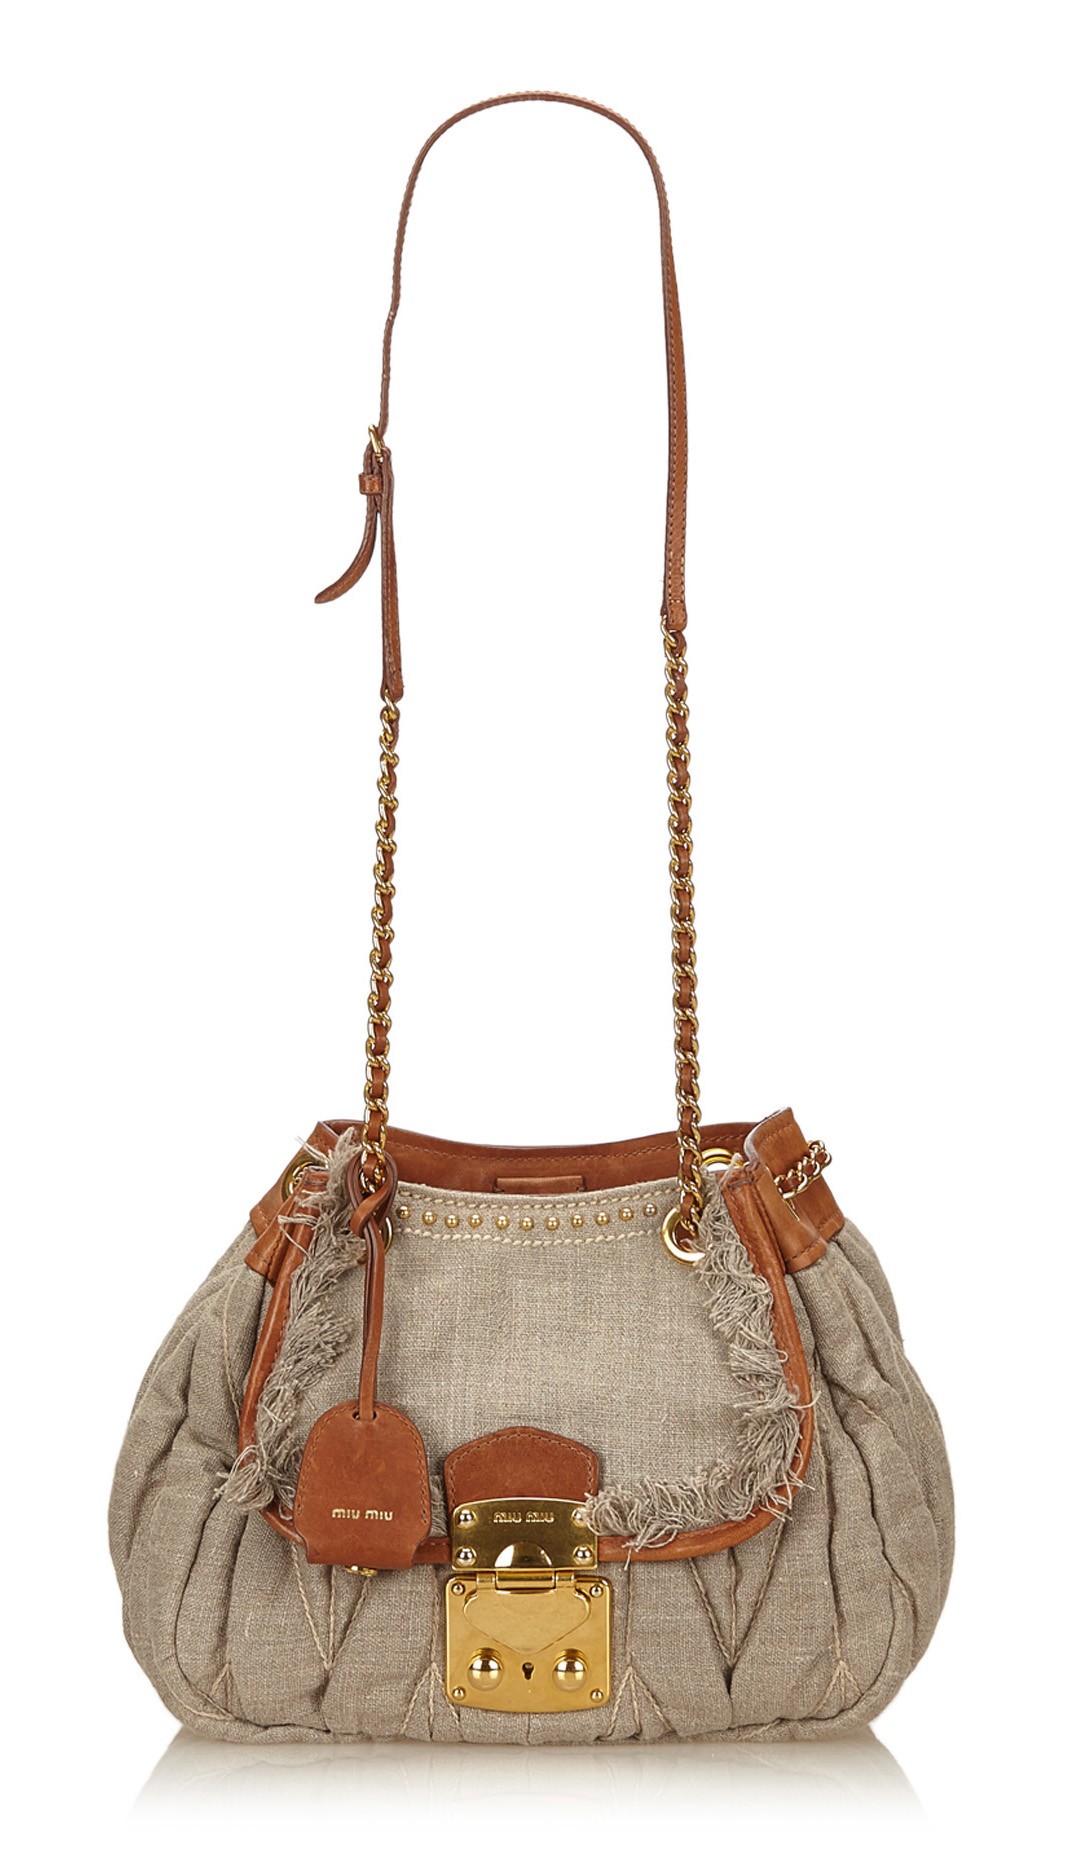 Miu Miu Shoulder Bags On Sale - Cognac Leather